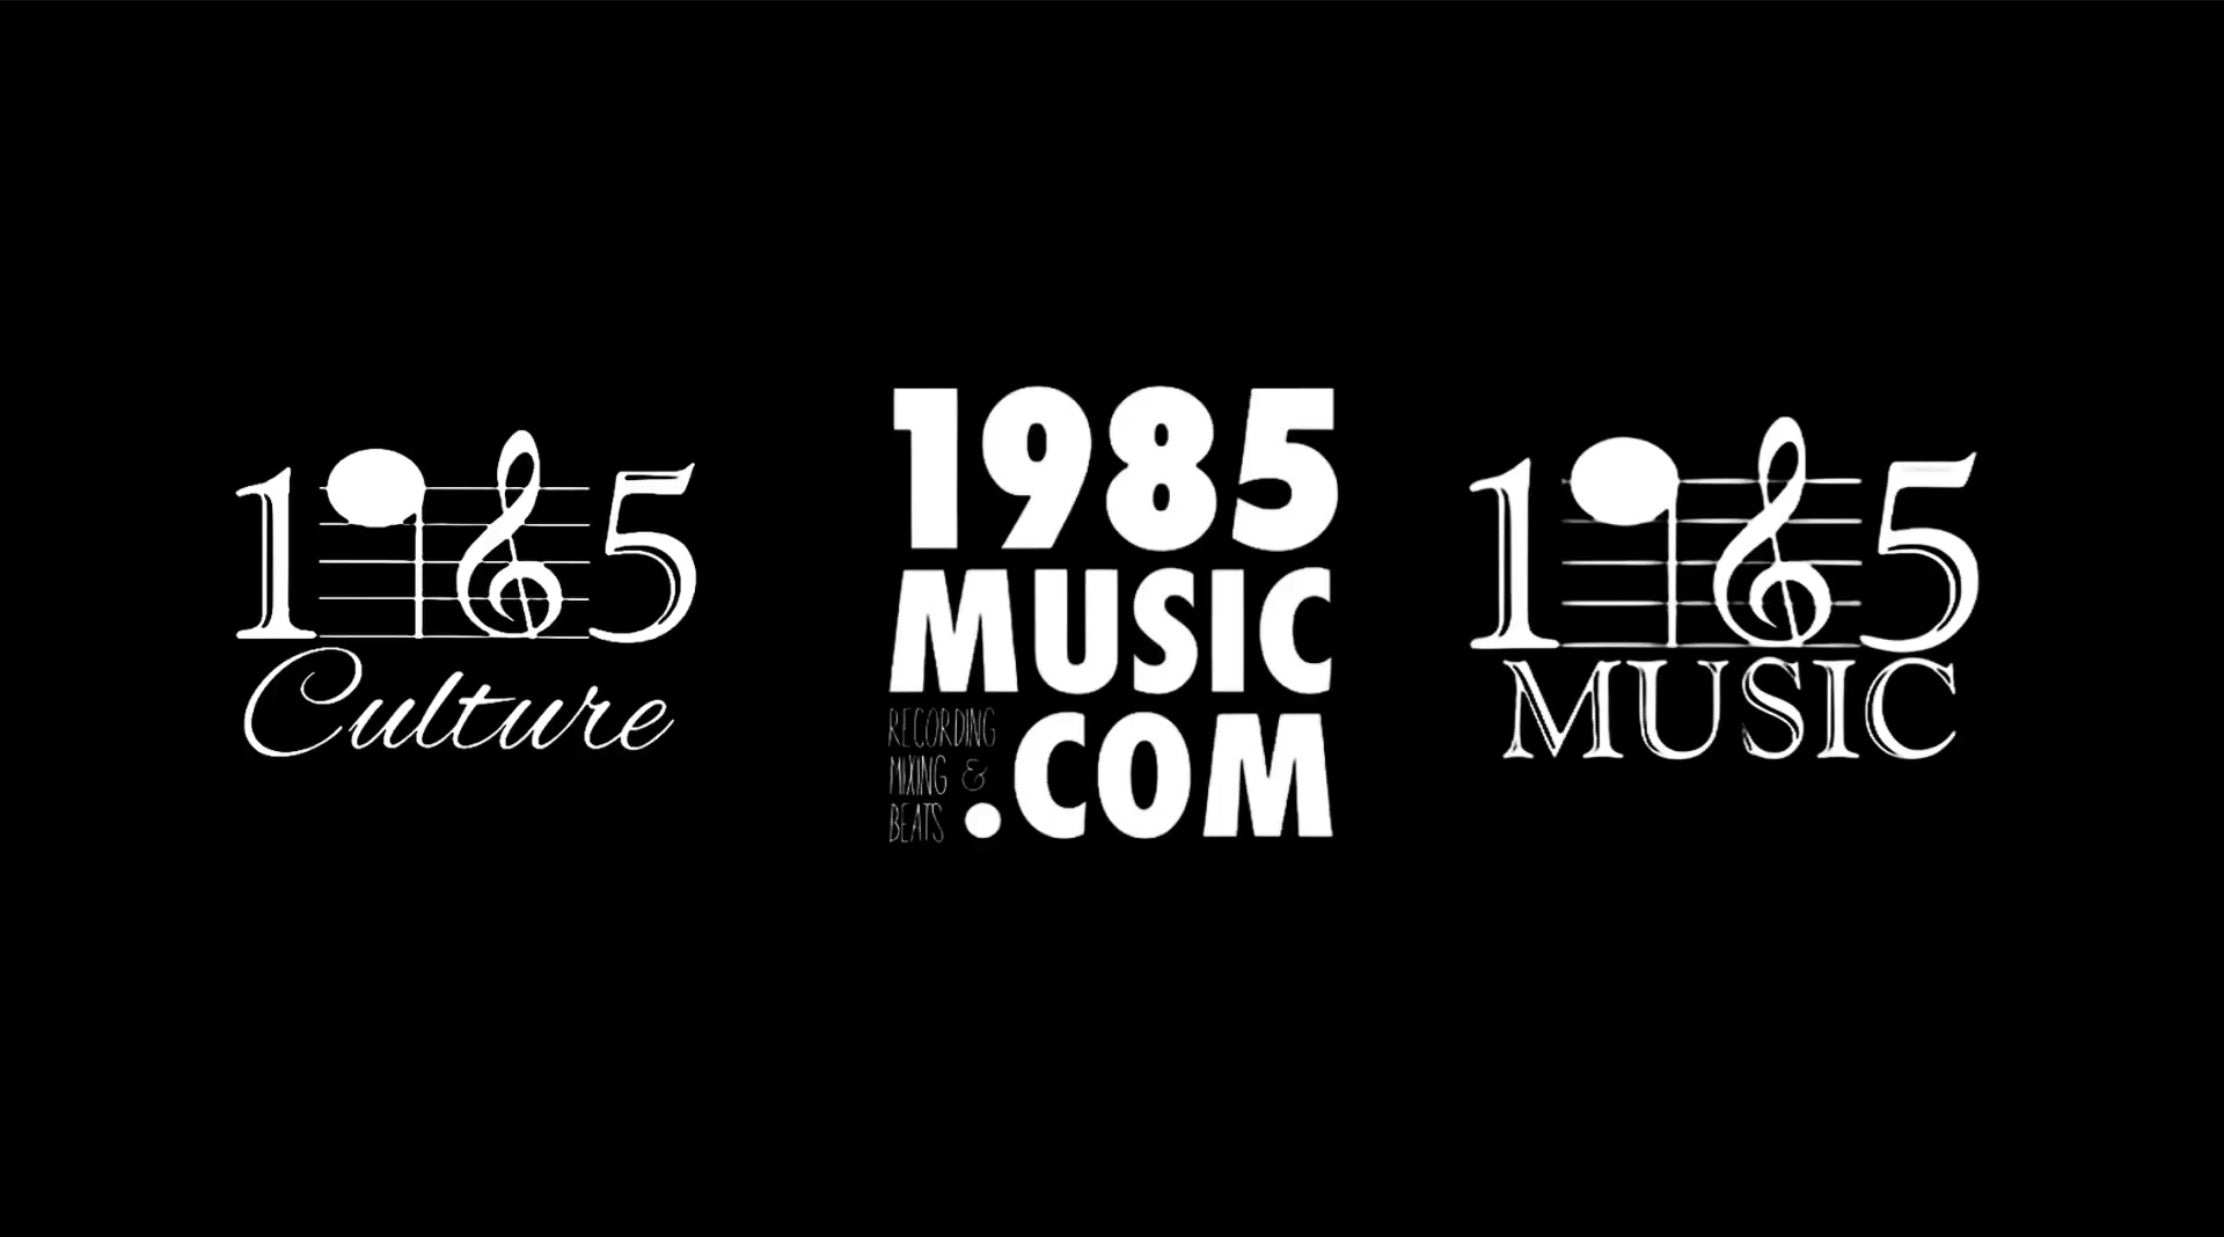 1985 Music & 1985 Culture